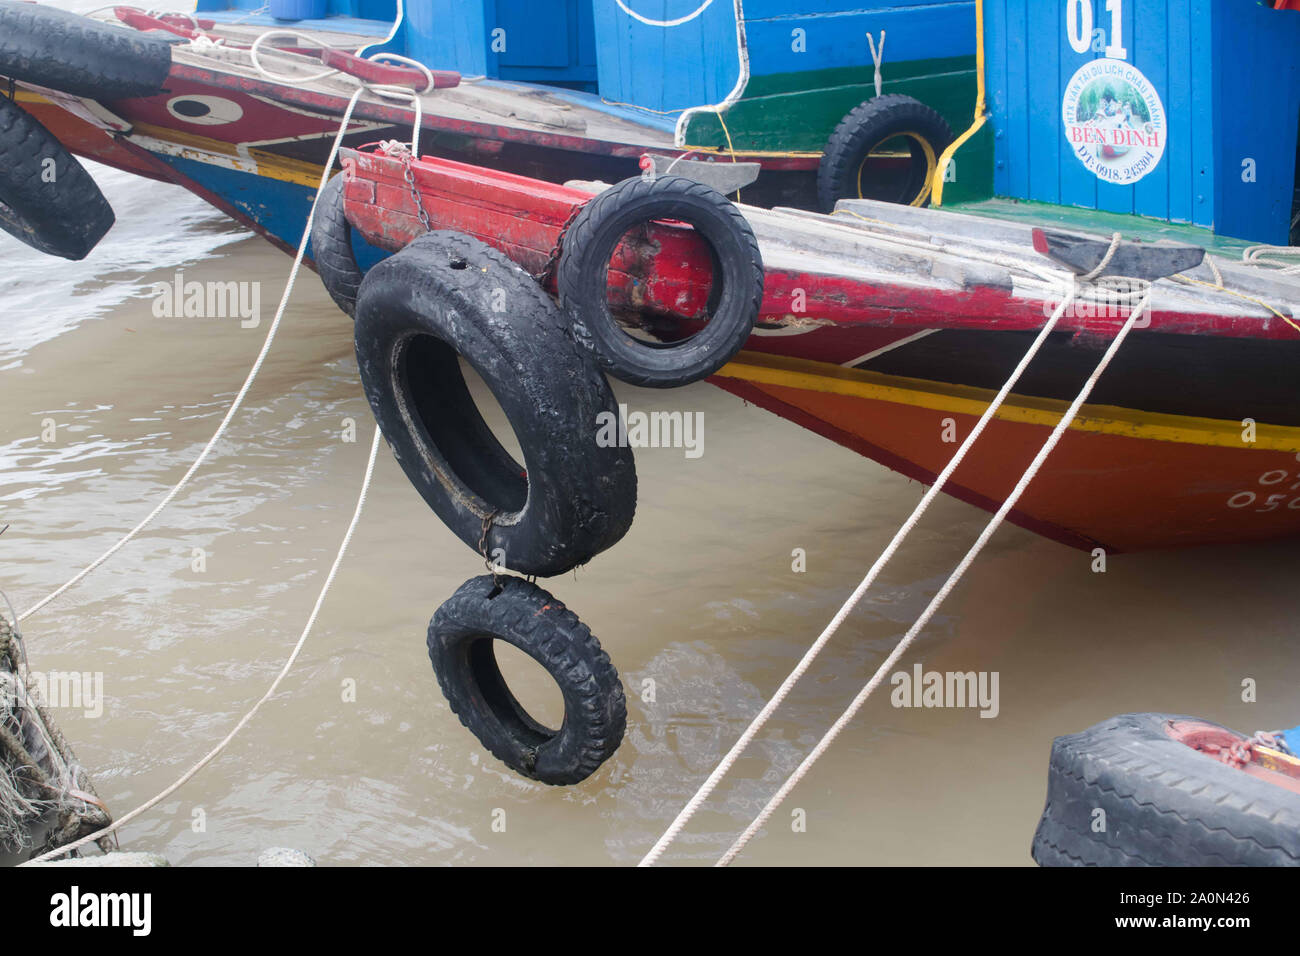 Juli 18, 2019 - MEKONG DELTA, VIETNAM: gummirad am vorderen Ende ein Boot, das am Ufer des Mekong Delta Fluss geparkt ist. Stockfoto